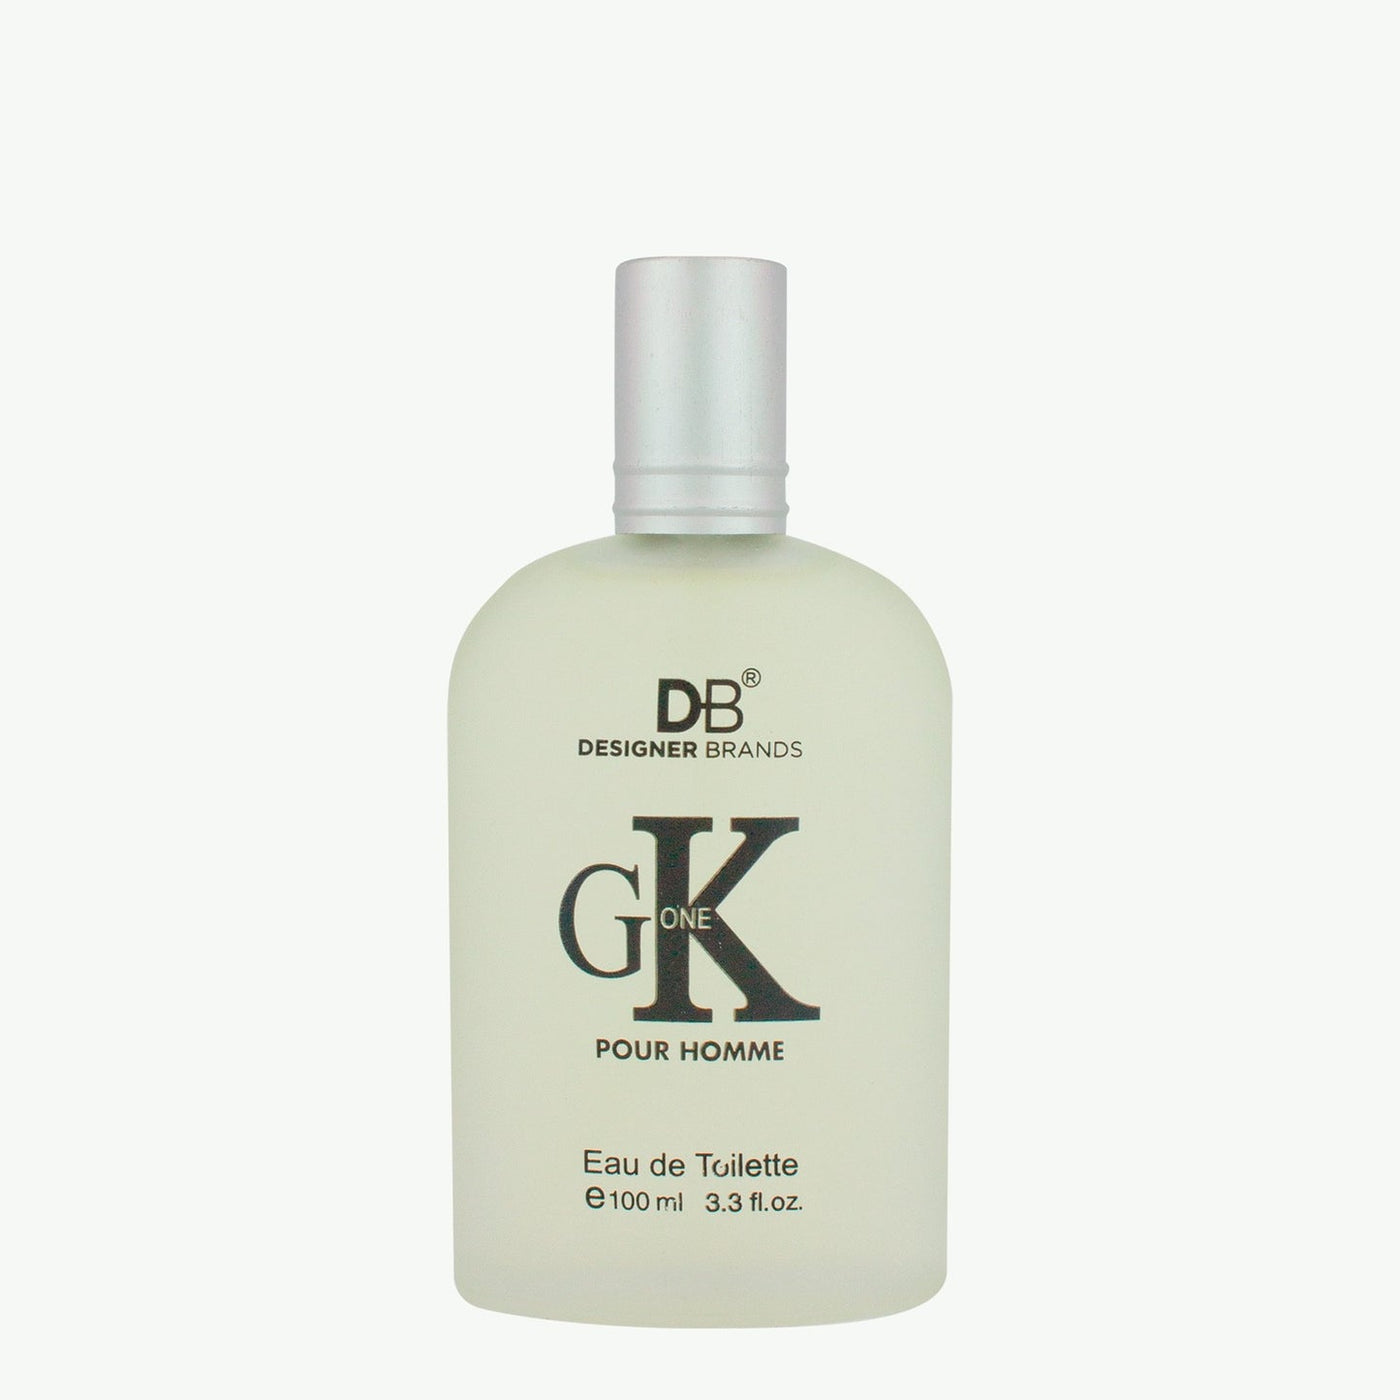 DB GK One for Men (EDT) 100ml Fragrance